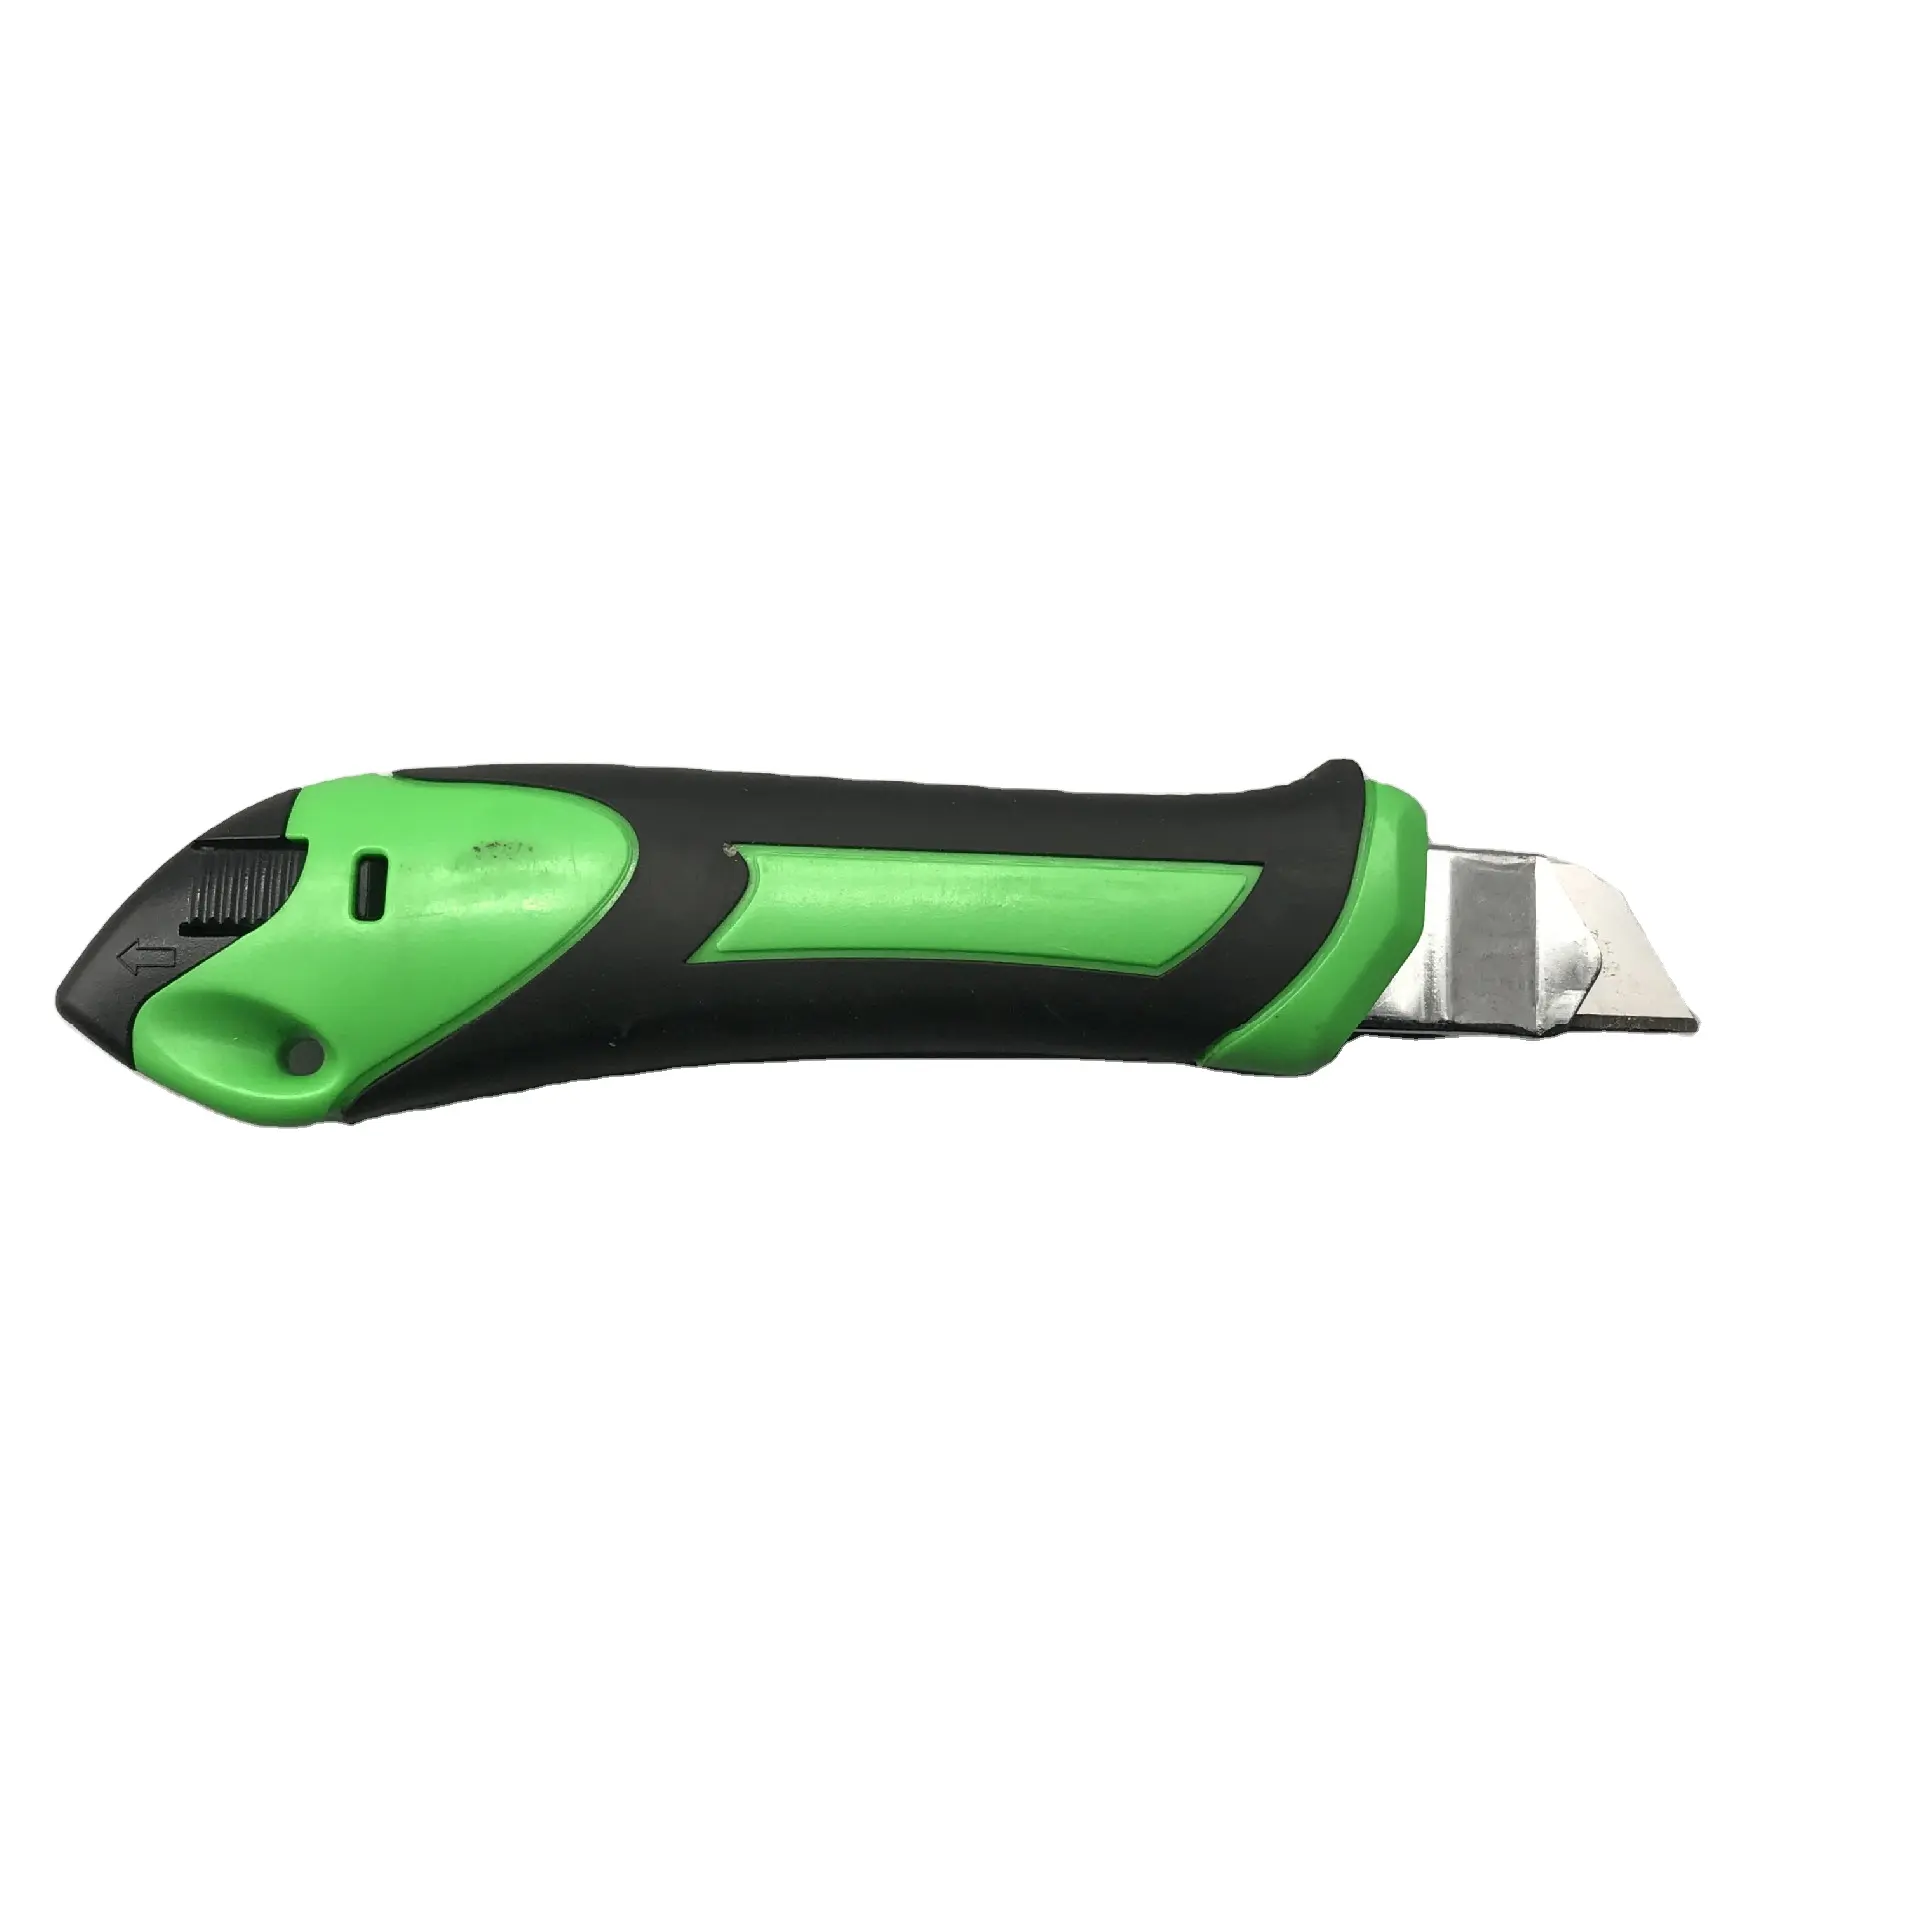 Ağır özel Logo renk kauçuk yeşil maket bıçağı kutusu kesici ABS kolu çelik geri çekilebilir maket bıçağı